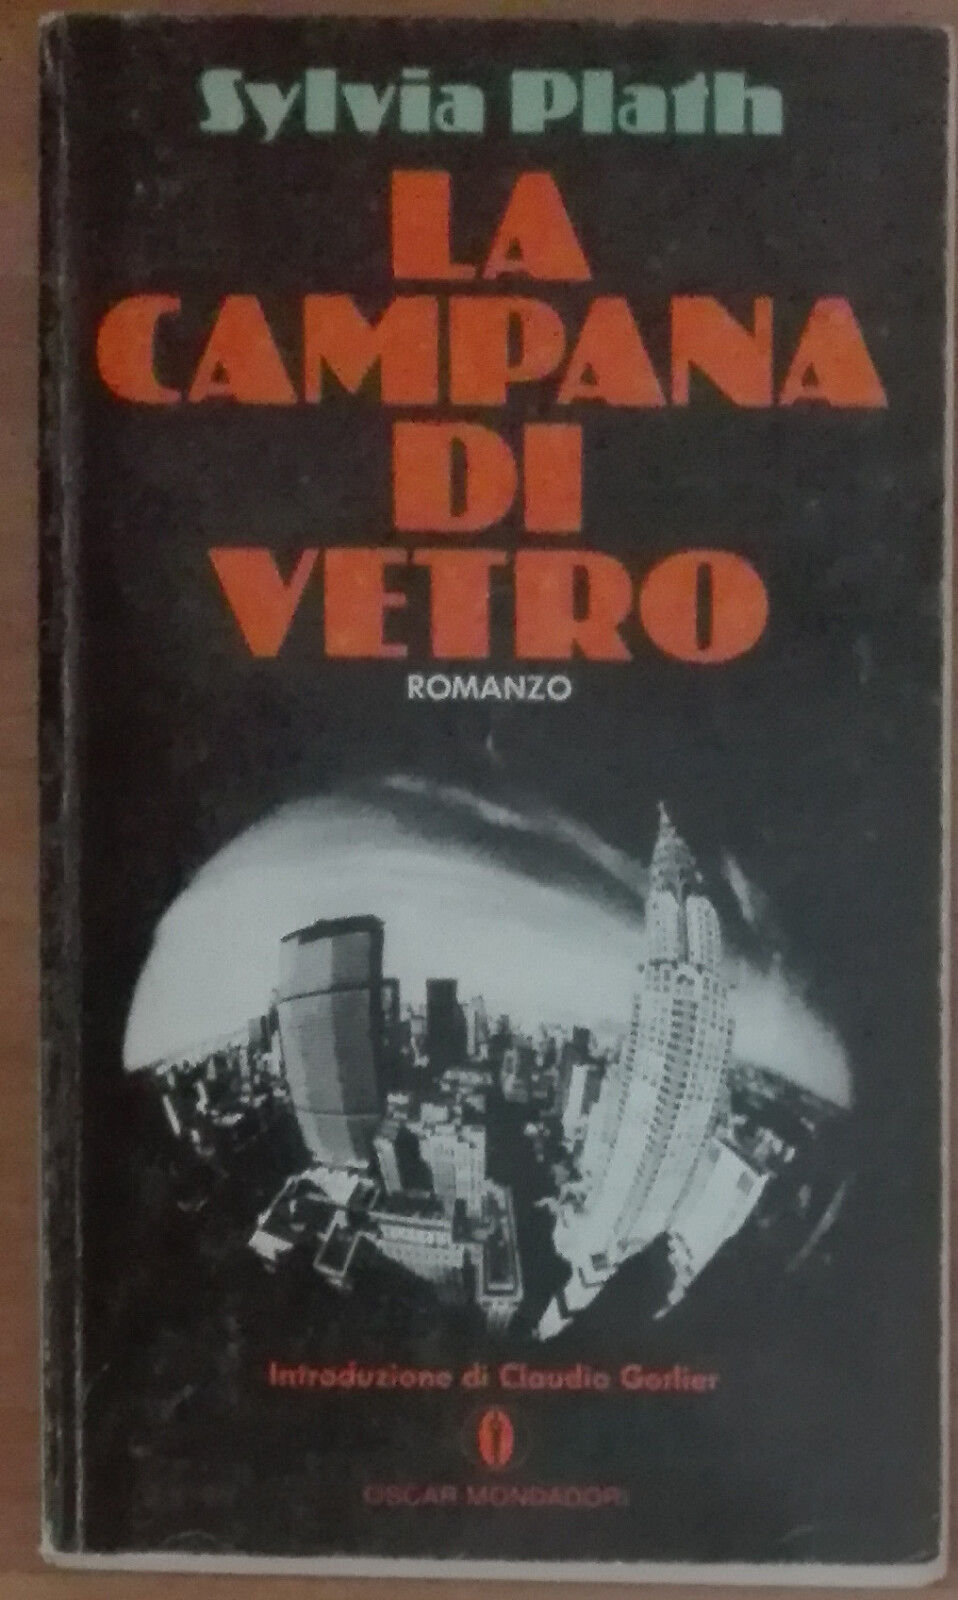 La campana di vetro - Sylvia Plath - Mondadori,1979 - A